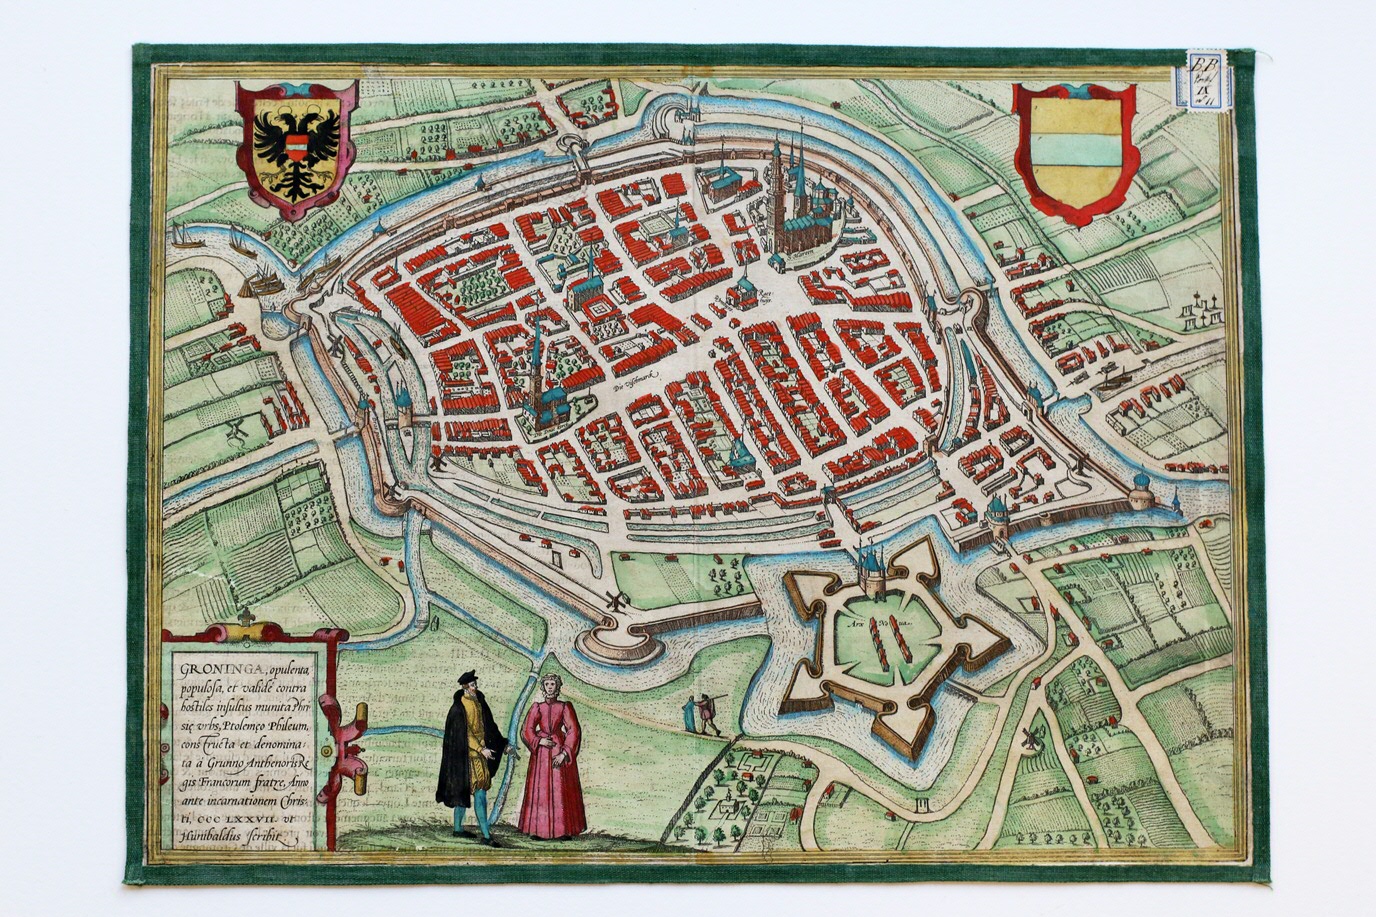 De afdeling Bijzondere Collecties bezit een uitgebreide kaartencollectie. Deze ingekleurde kaart uit 1575 toont het stratenpatroon van vroegmodern Groningen.The Special Collections department has an extensive map collection. This coloured map from 1575 shows the street grid in early modern Groningen.